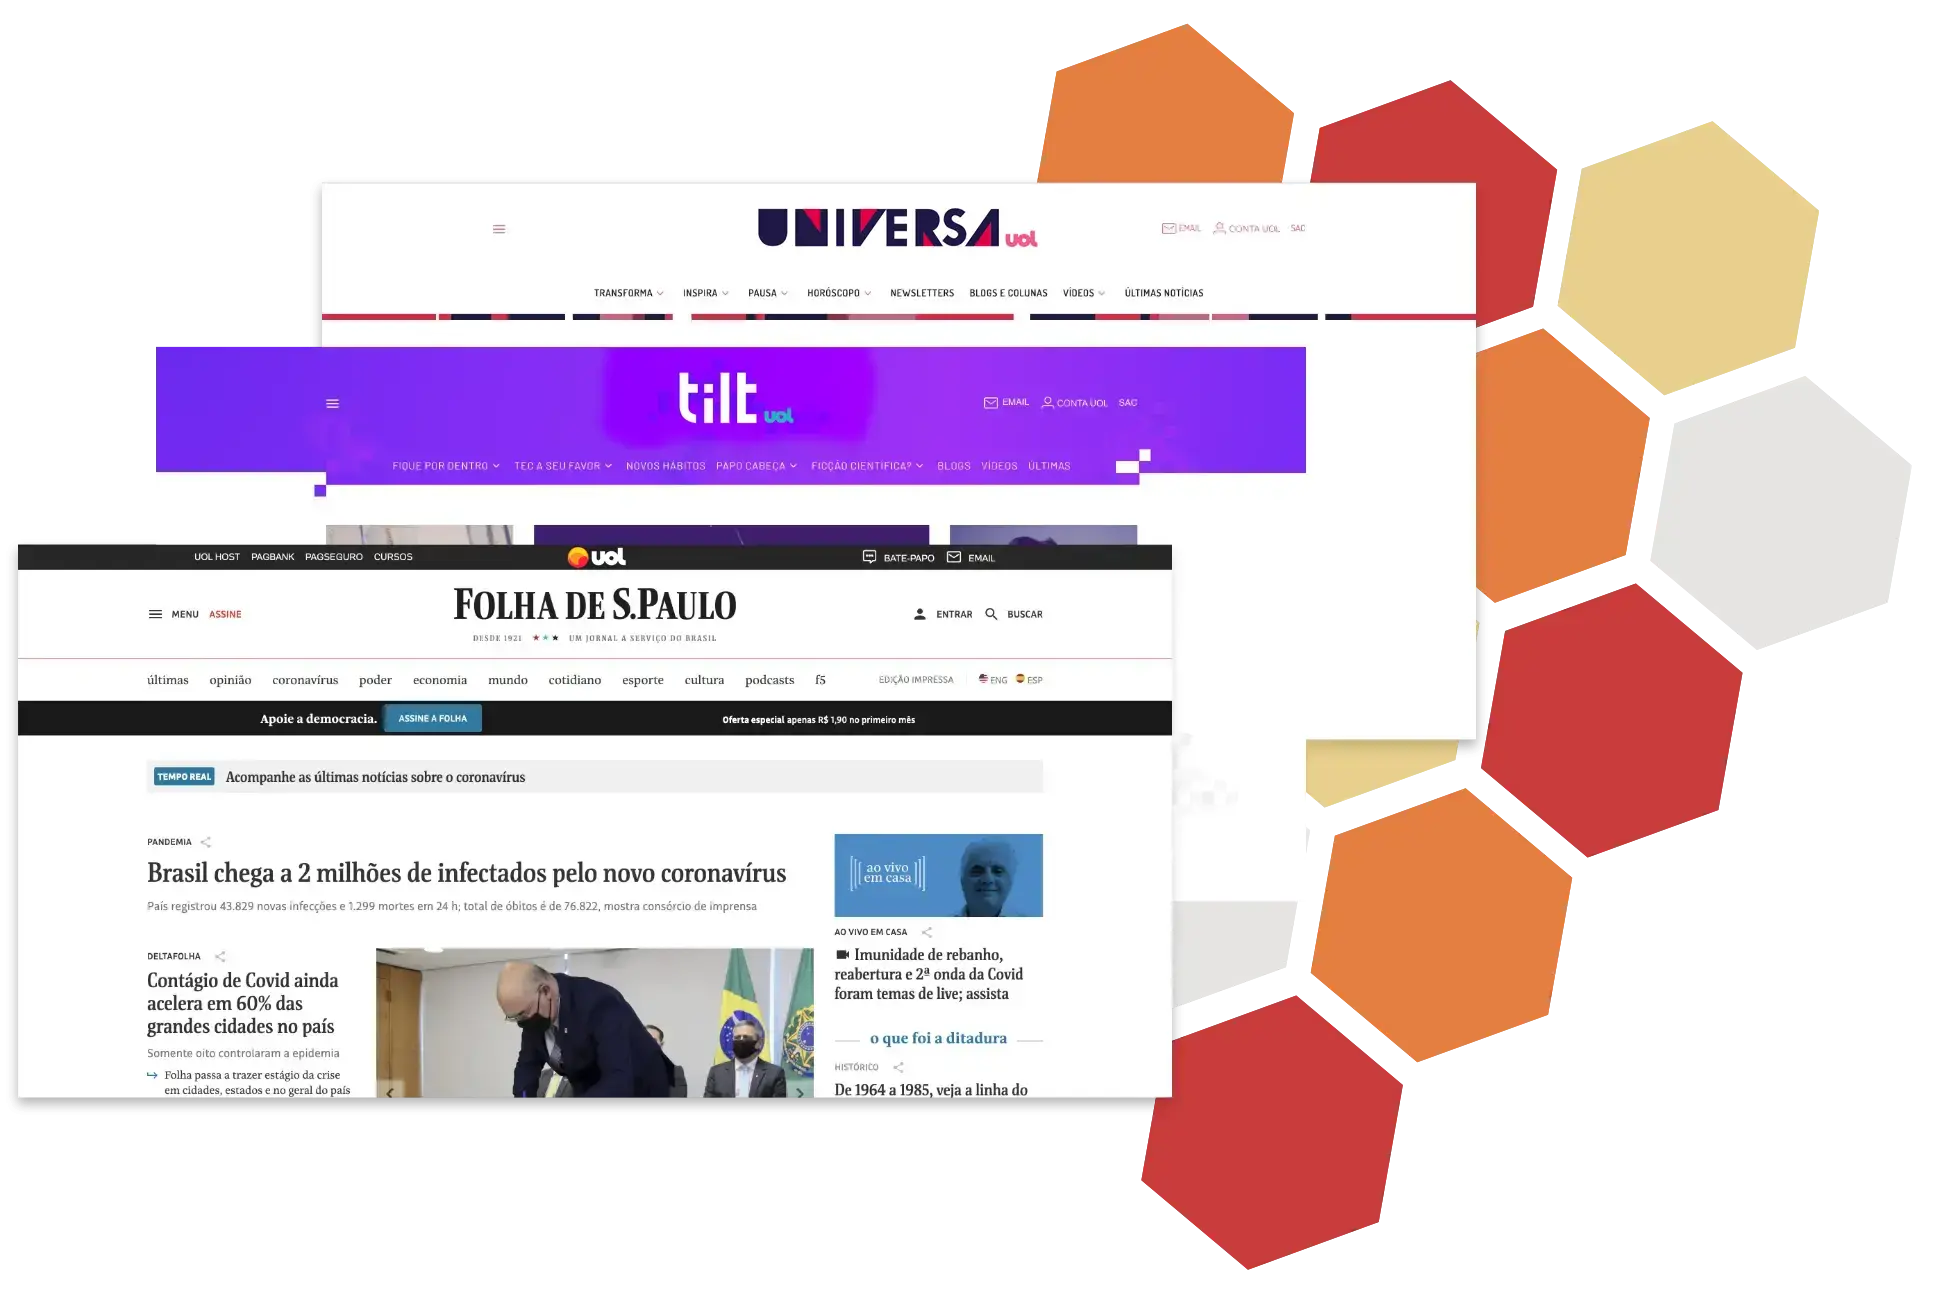  Sites dentro da network do UOL: Folha de São Paulo, Tilt, Universa.